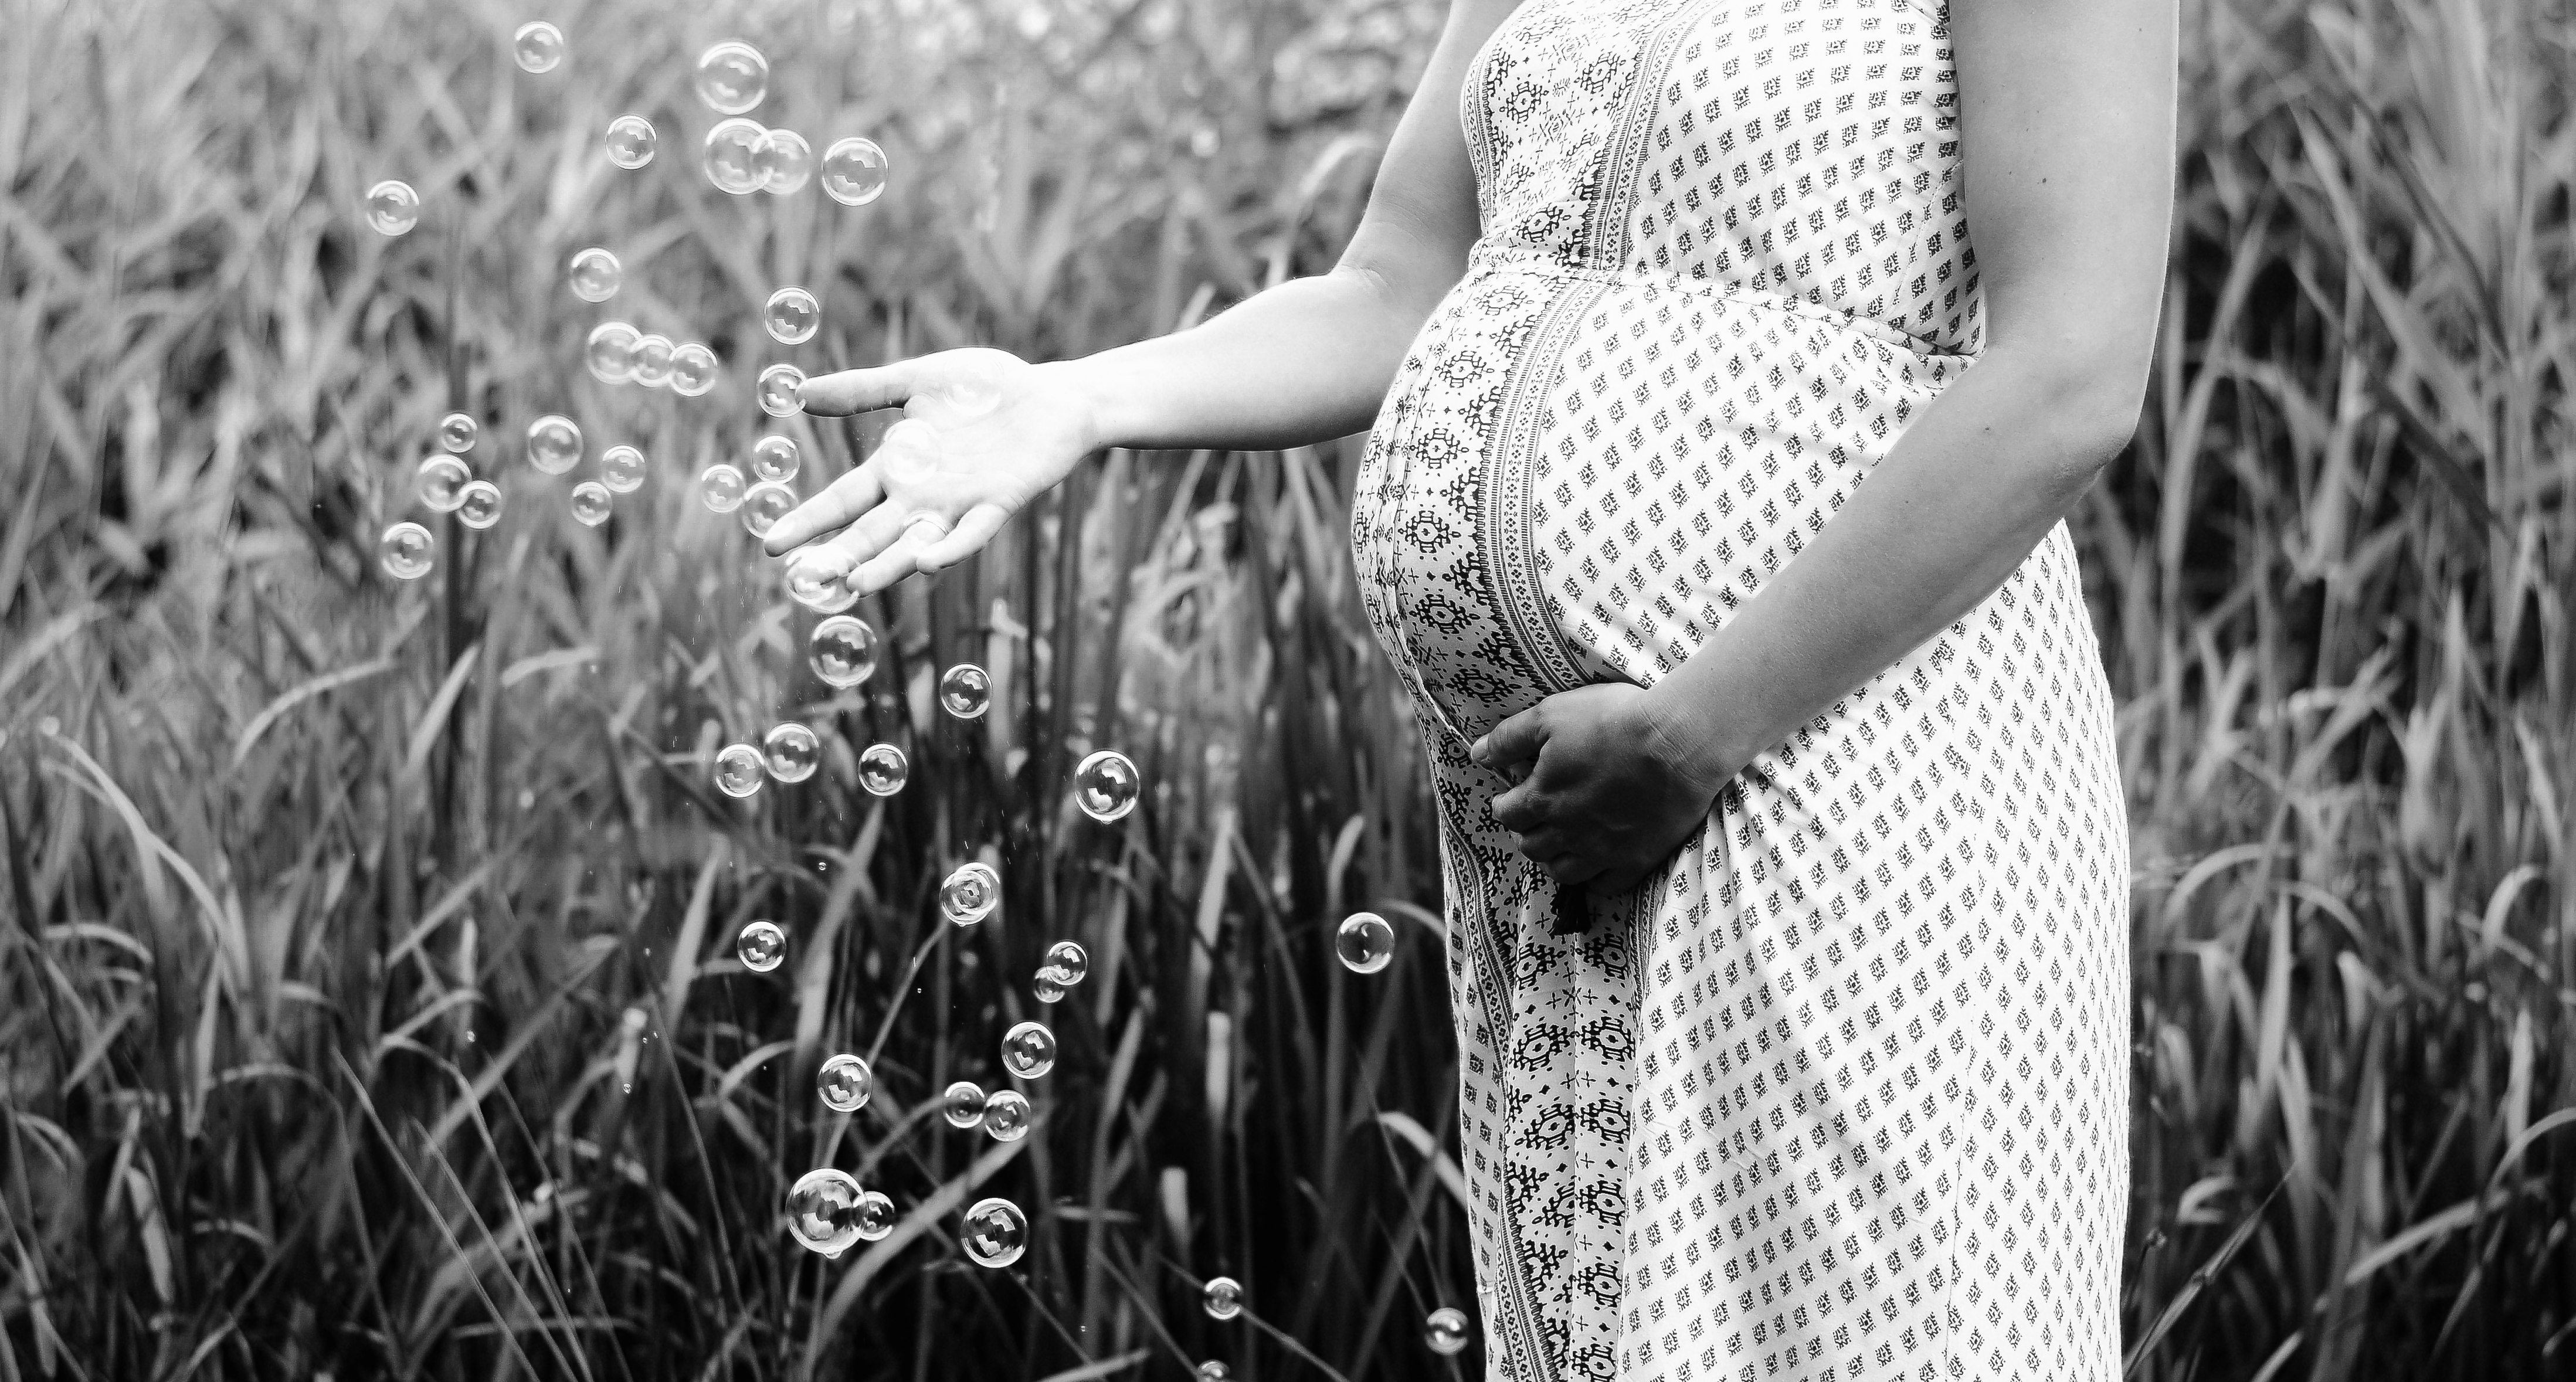 Photographe Belge Maternité nouveau-né Mons Hainaut Séance photo famille grossesse